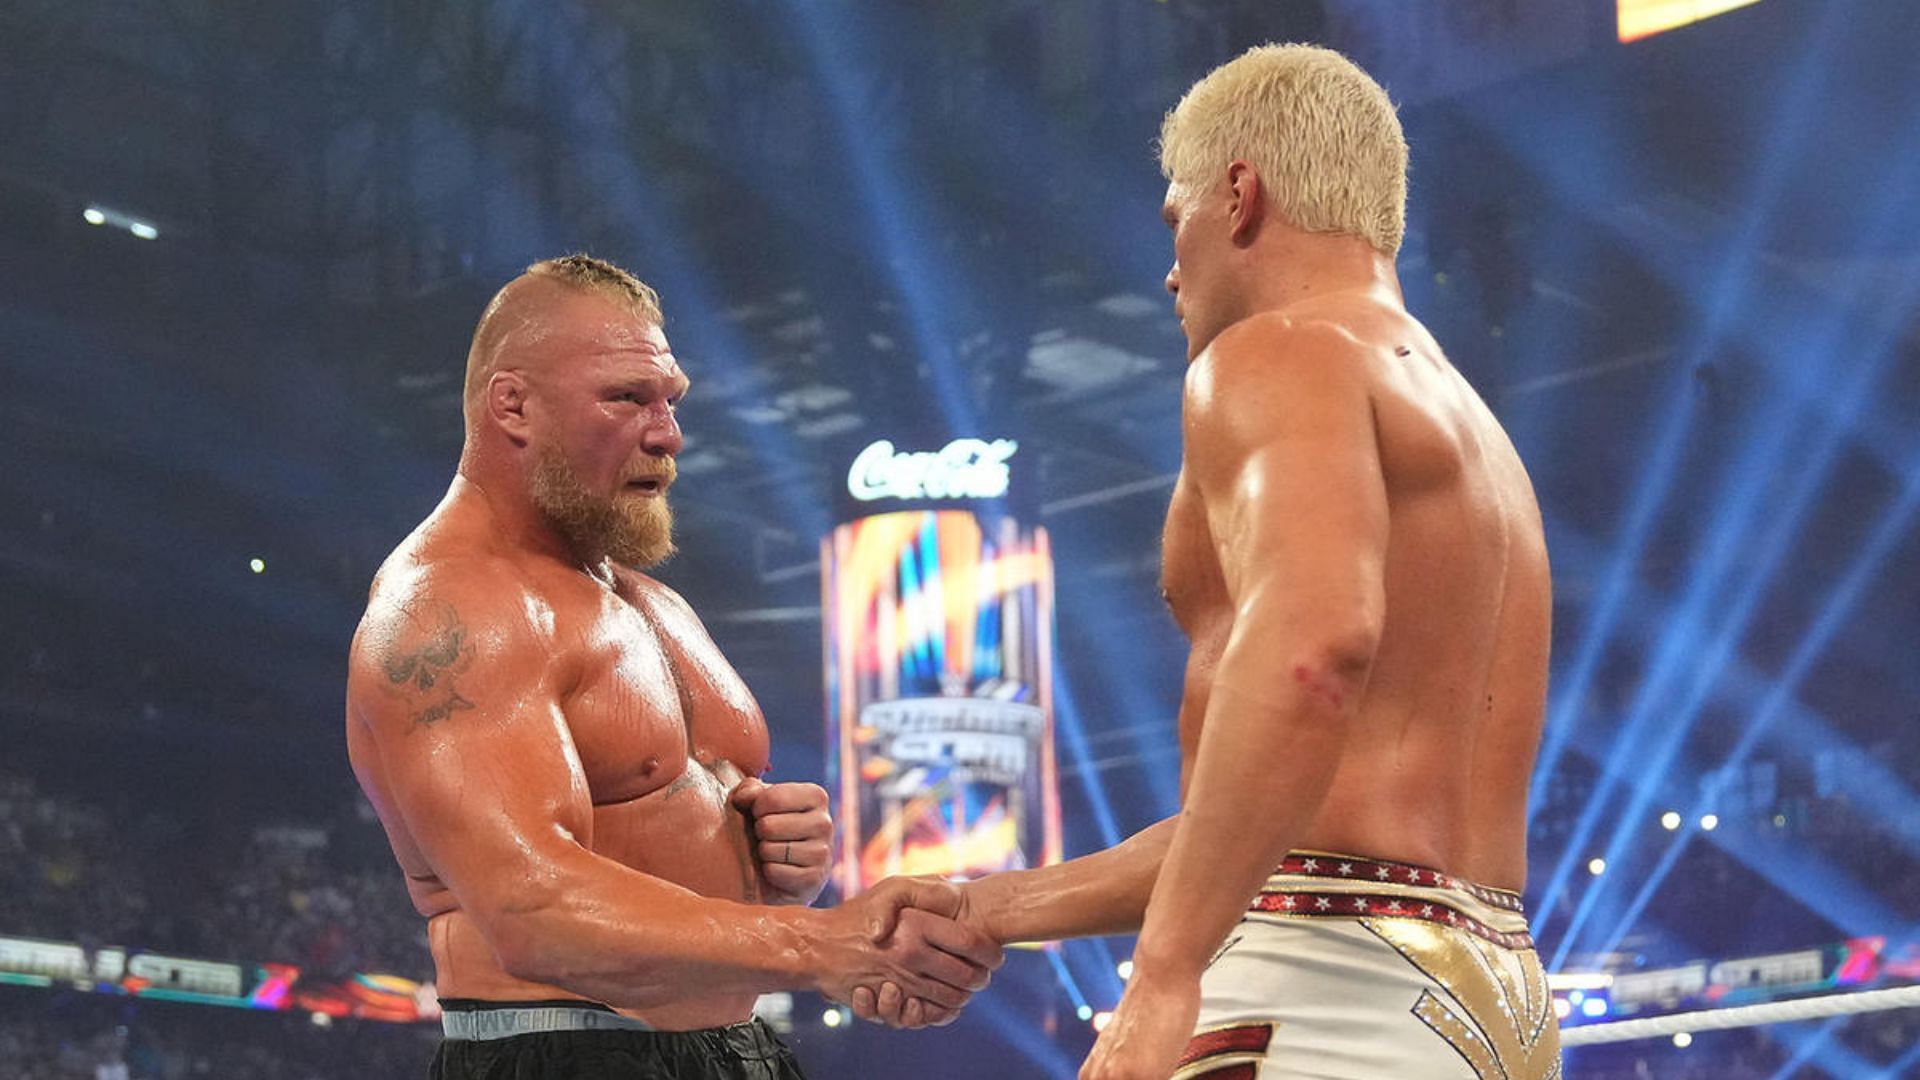 Brock&#039;s latest WWE appearance was in SummerSlam.